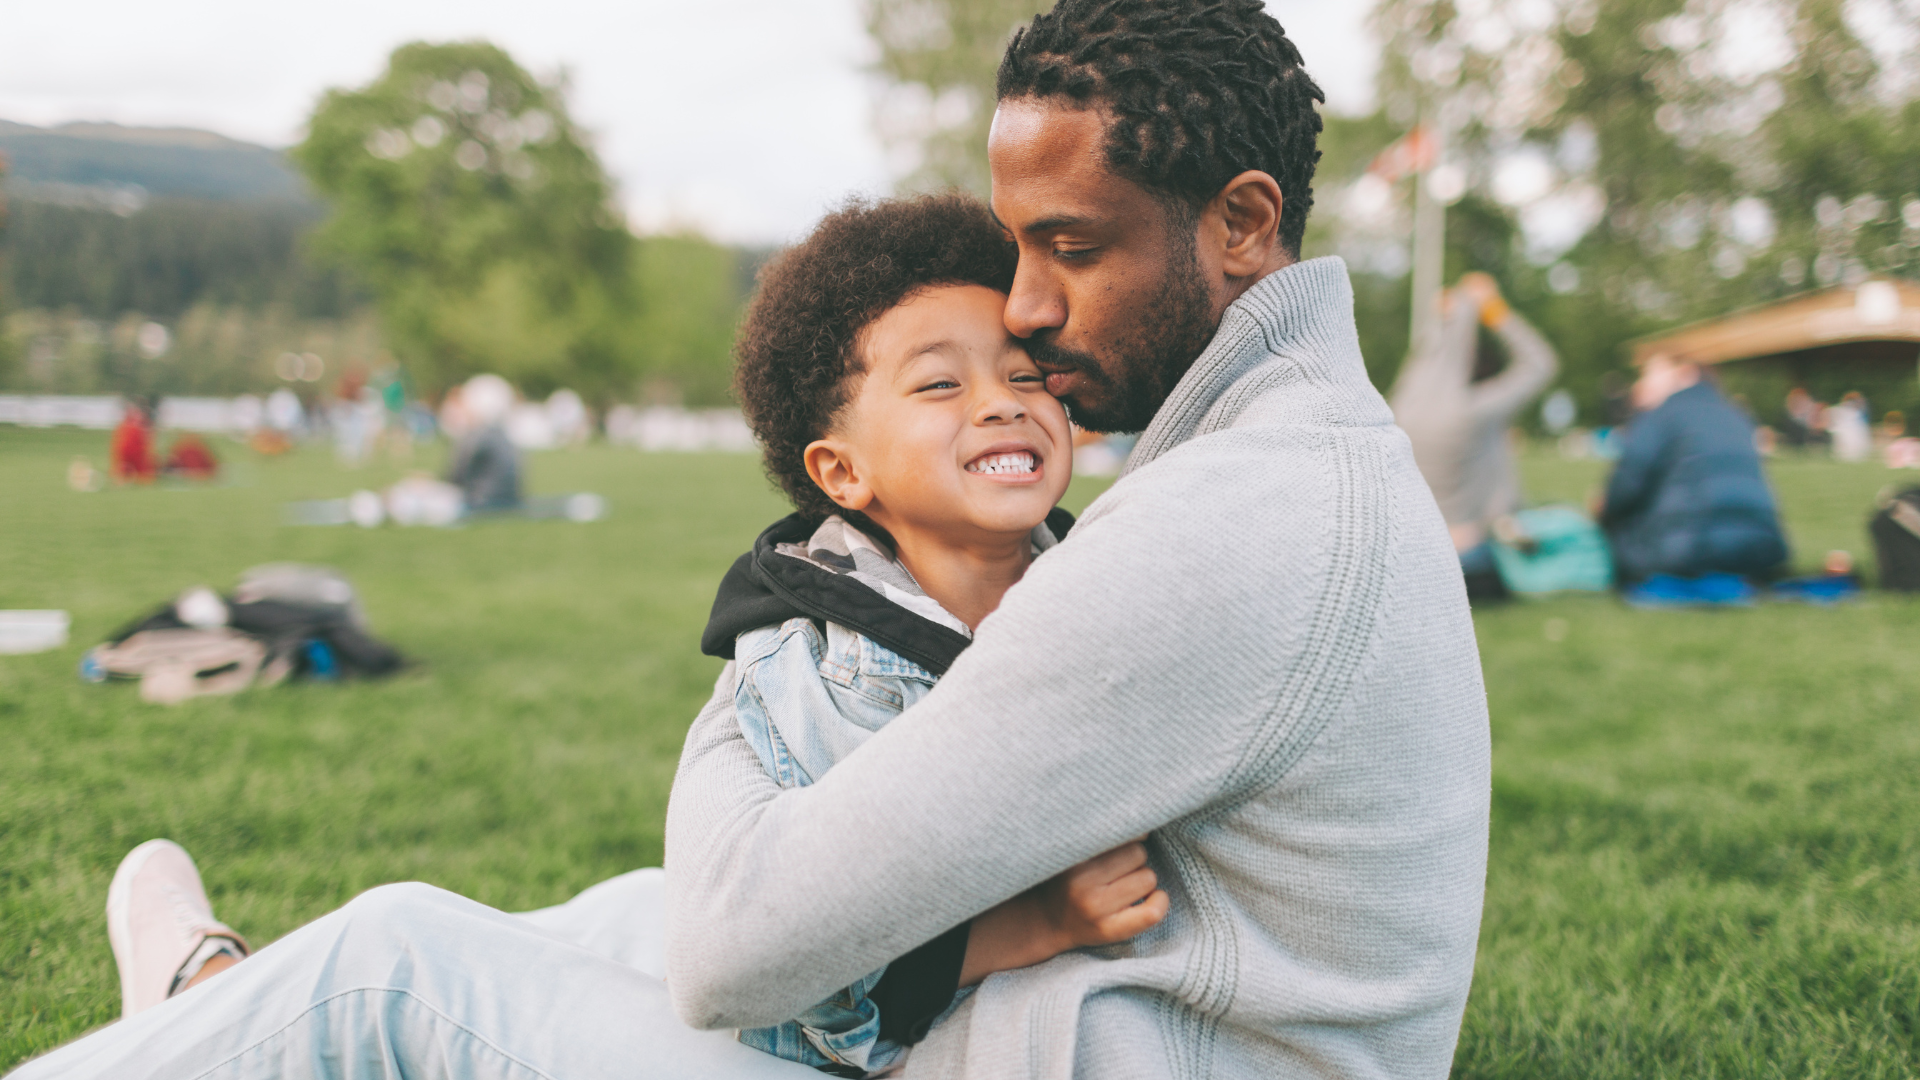 Paternidade: homens com estas 8 características são considerados bons pais